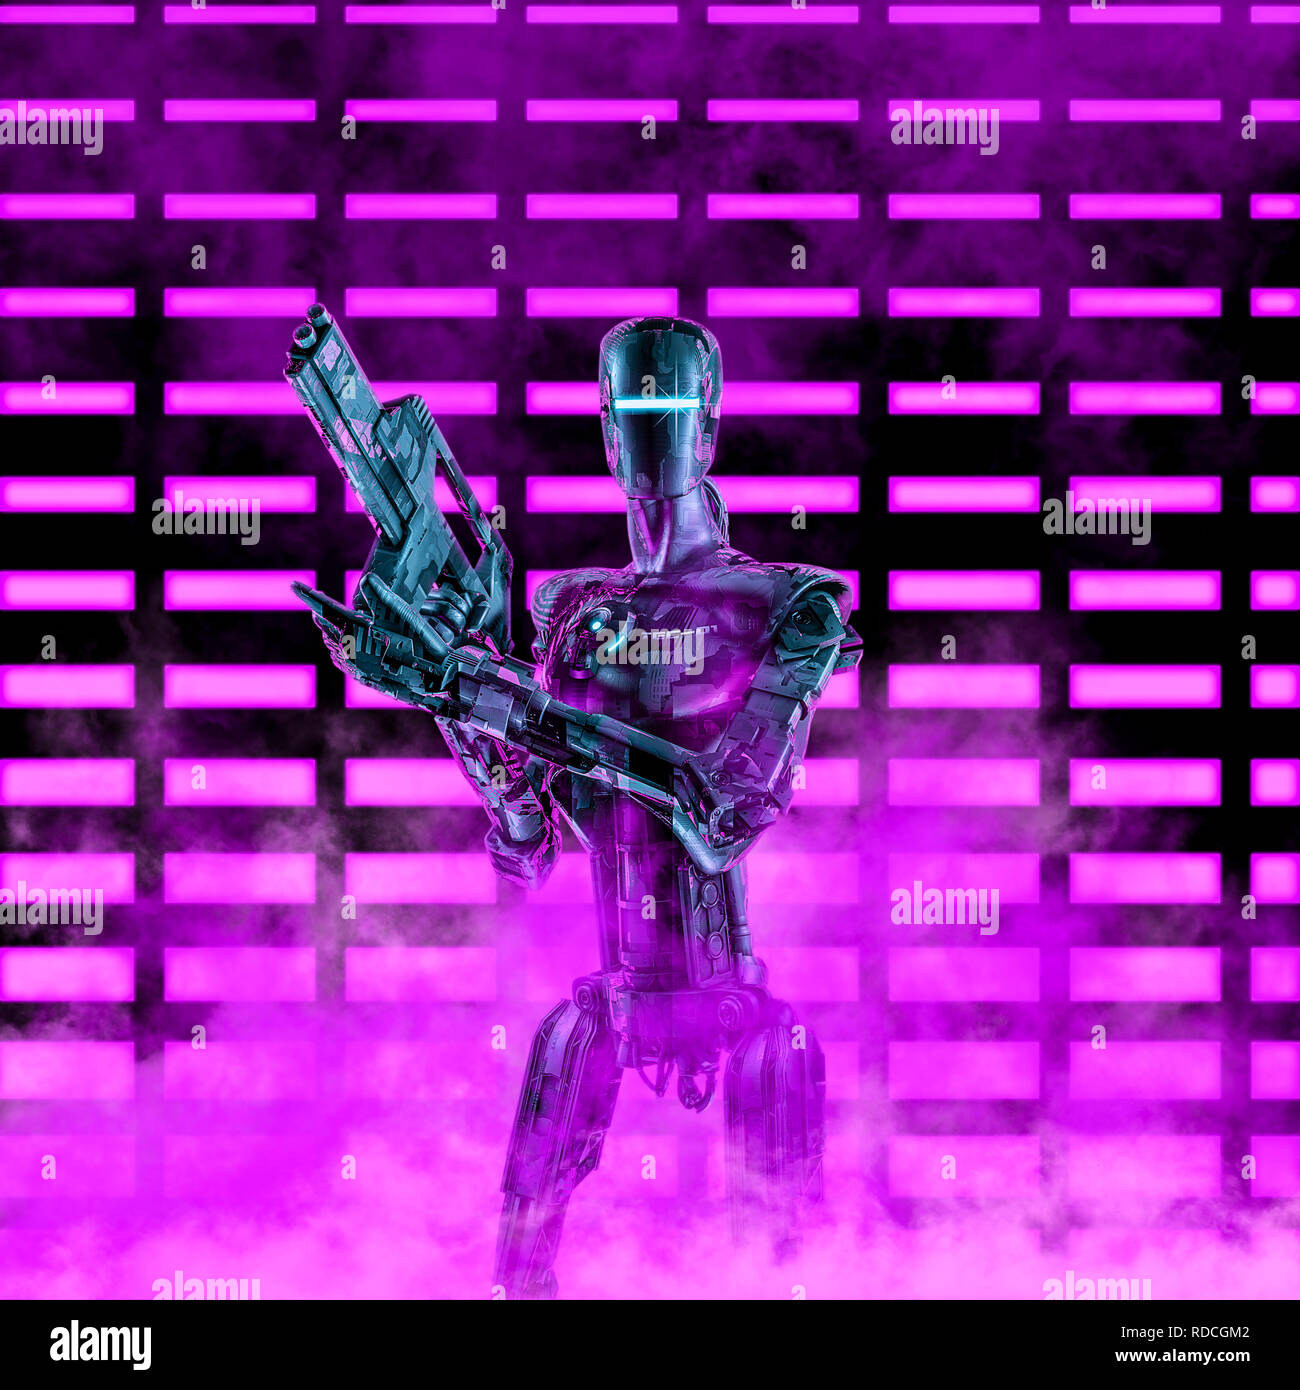 Il neon trooper robot / 3D illustrazione di fantascienza scena con android militari azienda fucile laser di fronte incandescente luci al neon Foto Stock